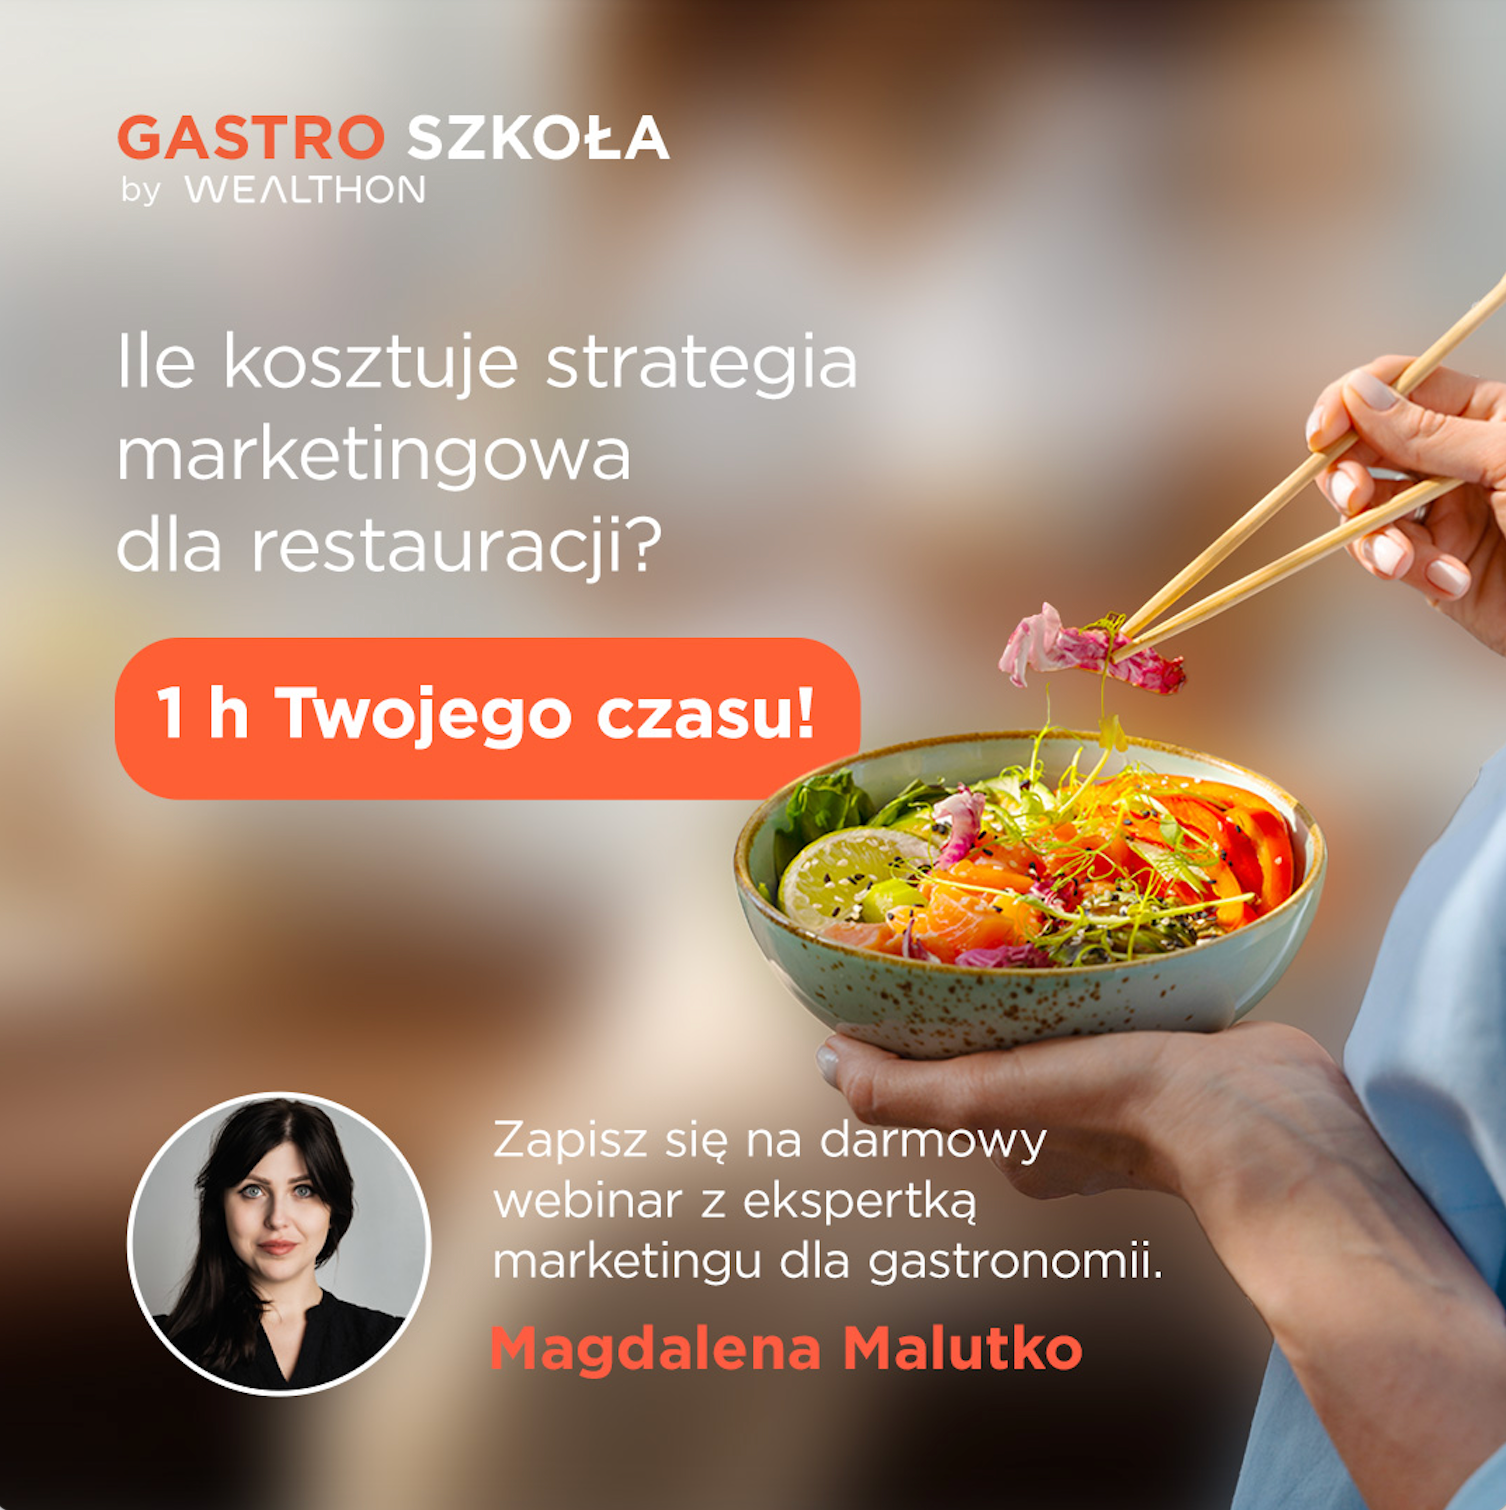 Gastro Szkoła by Wealthon: marketing w gastronomii. Jak zwiększyć sprzedaż w restauracji i przyciągnąć potencjalnych klientów.